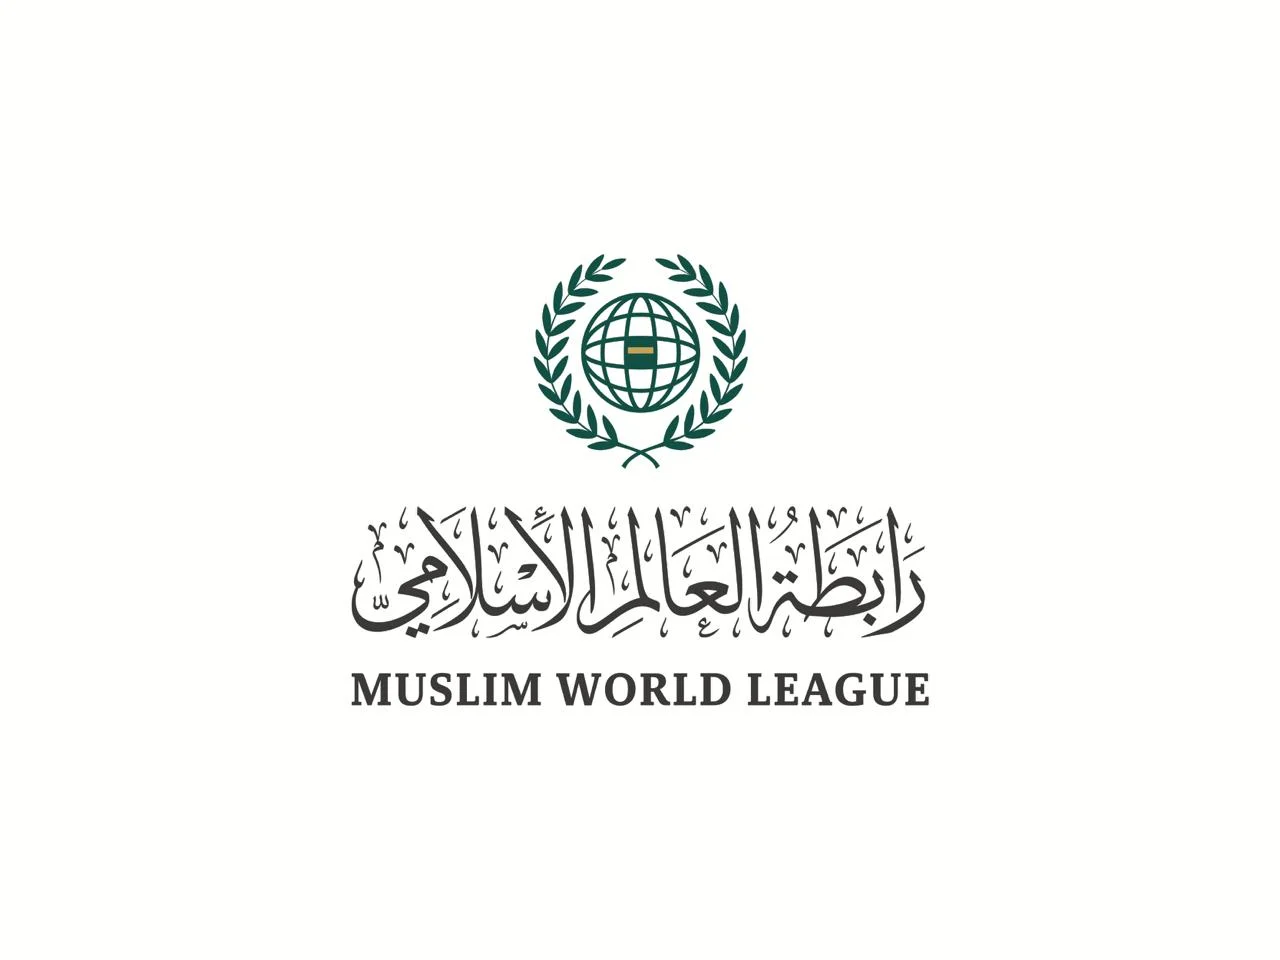  رابطة العالم الإسلامي ترحب بتعيين مبعوث خاص للأمم المتحدة لمكافحة «الإسلاموفوبيا»